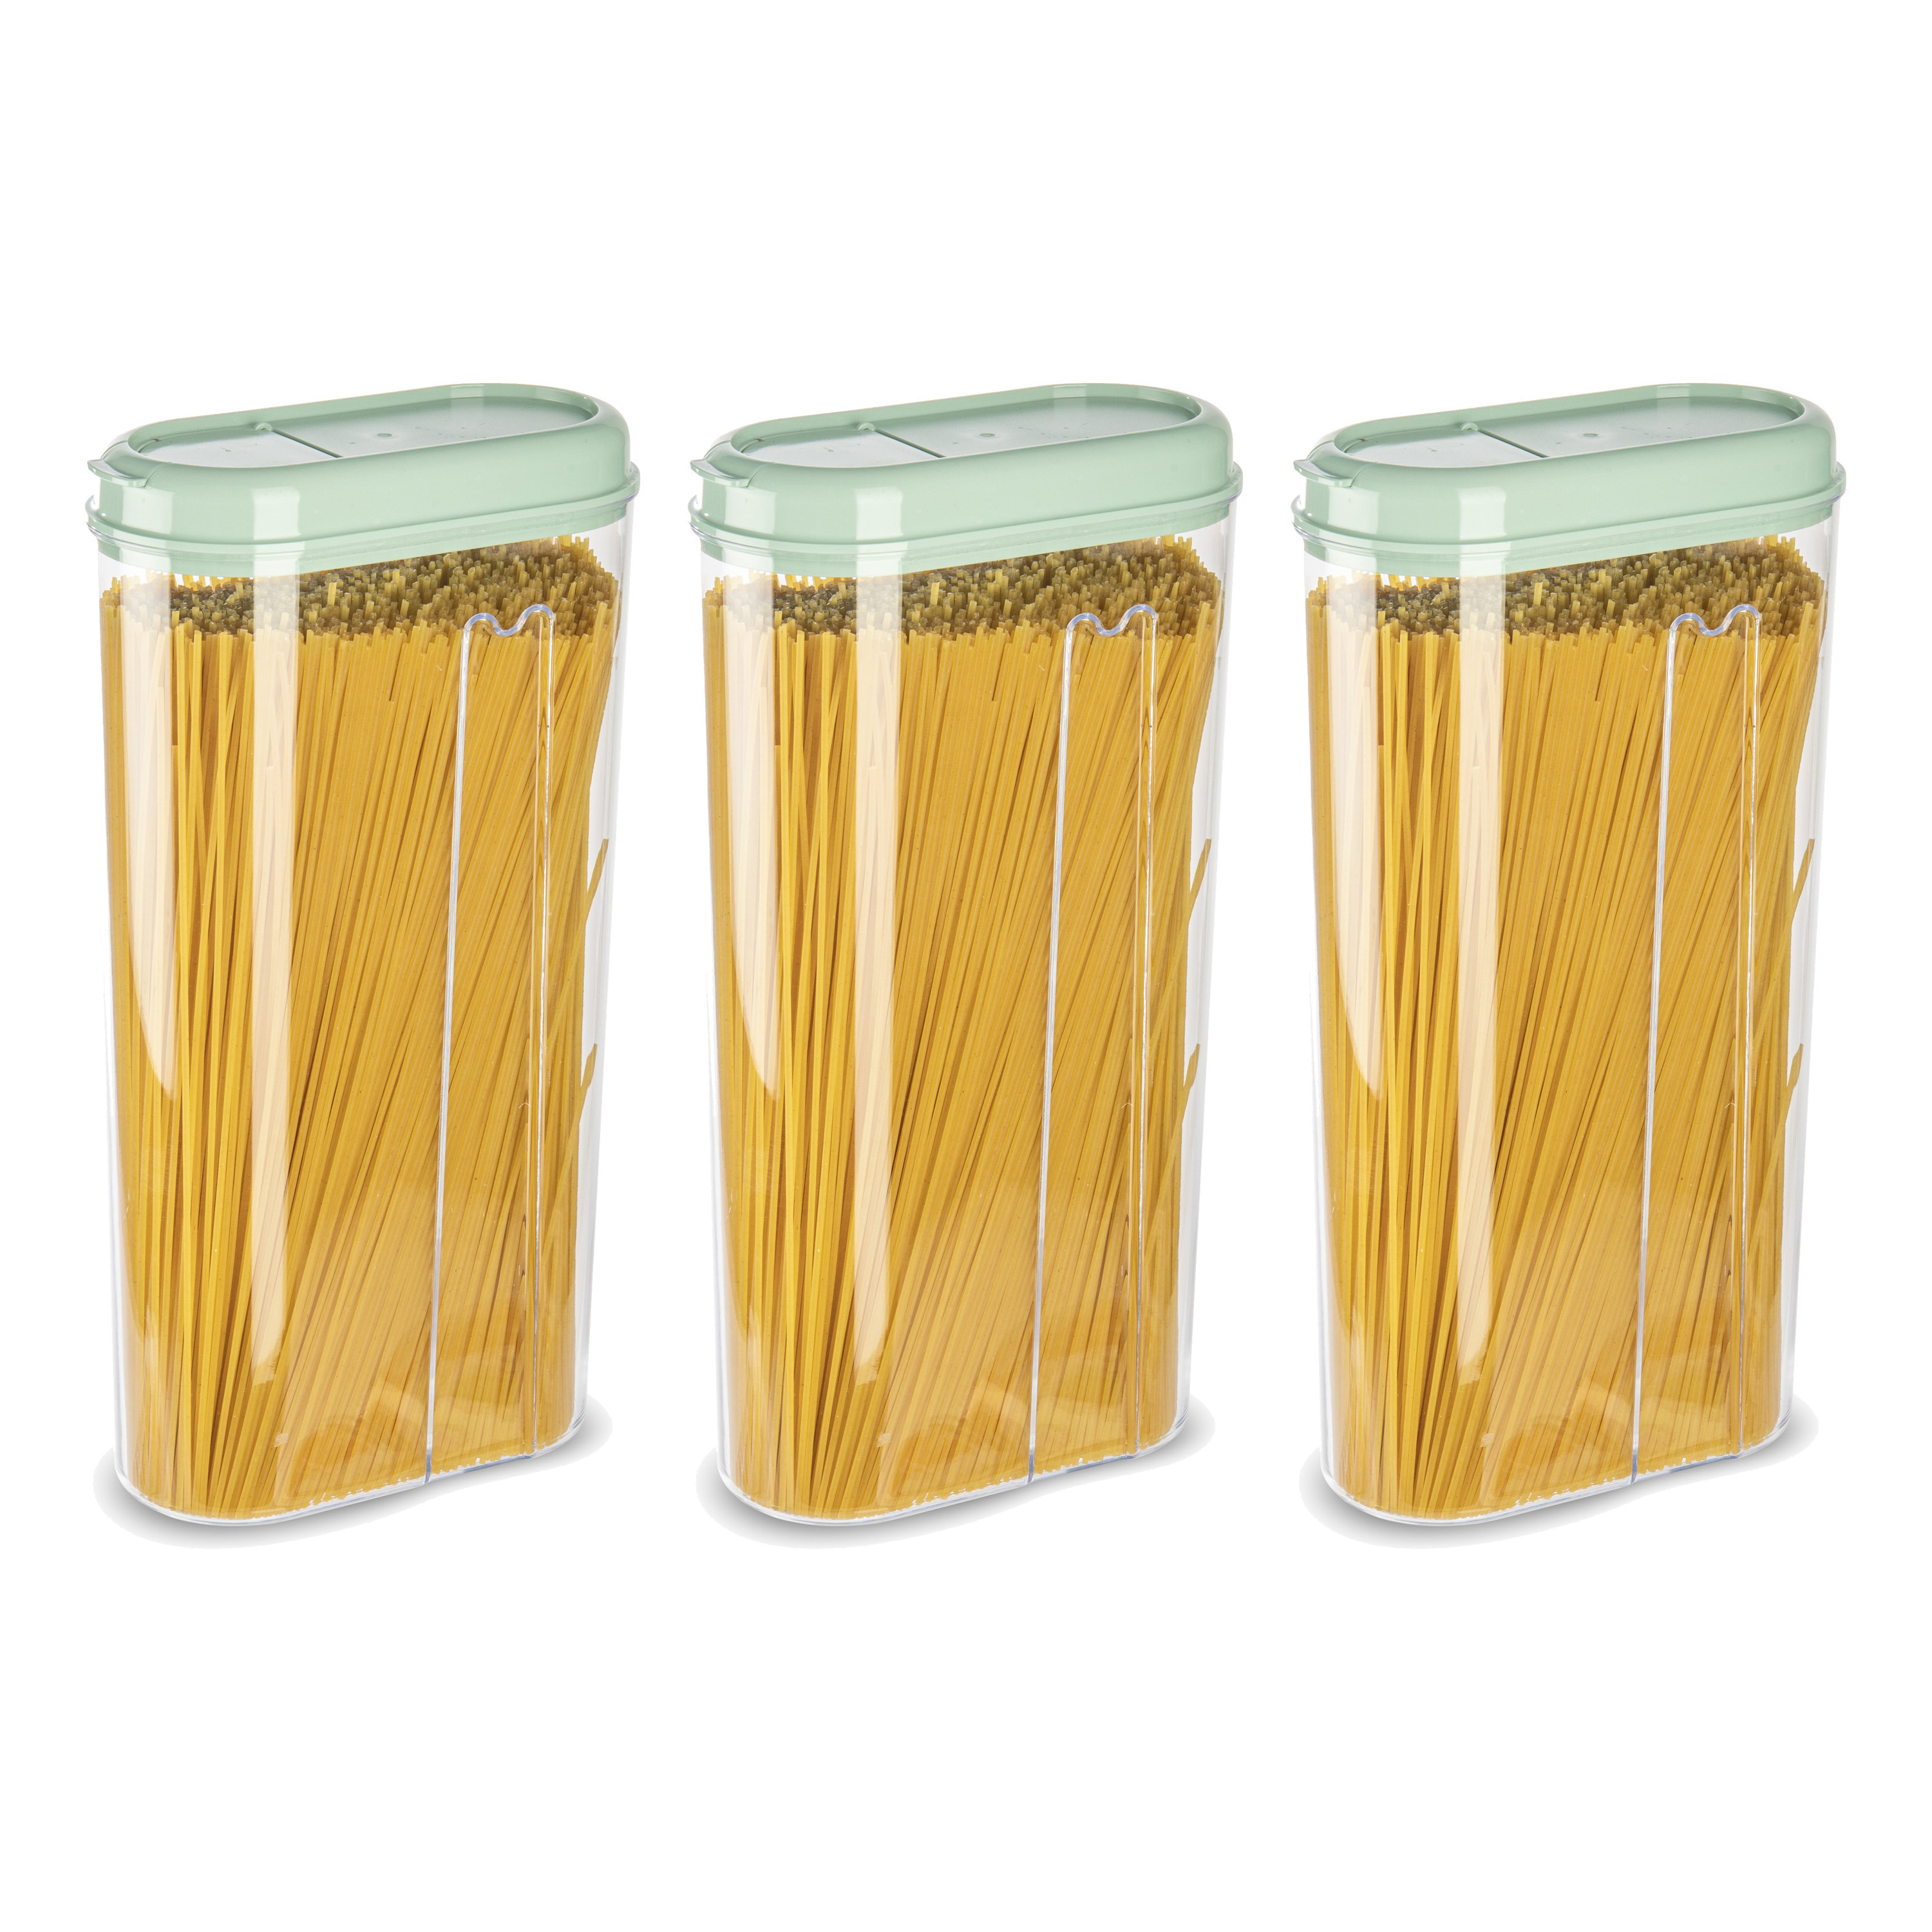 PlasticForte Voedselcontainer strooibus - 3x - mintgroen - 2350 ml - kunststof - 15 x 8 x 30 cm - voorraadpot -